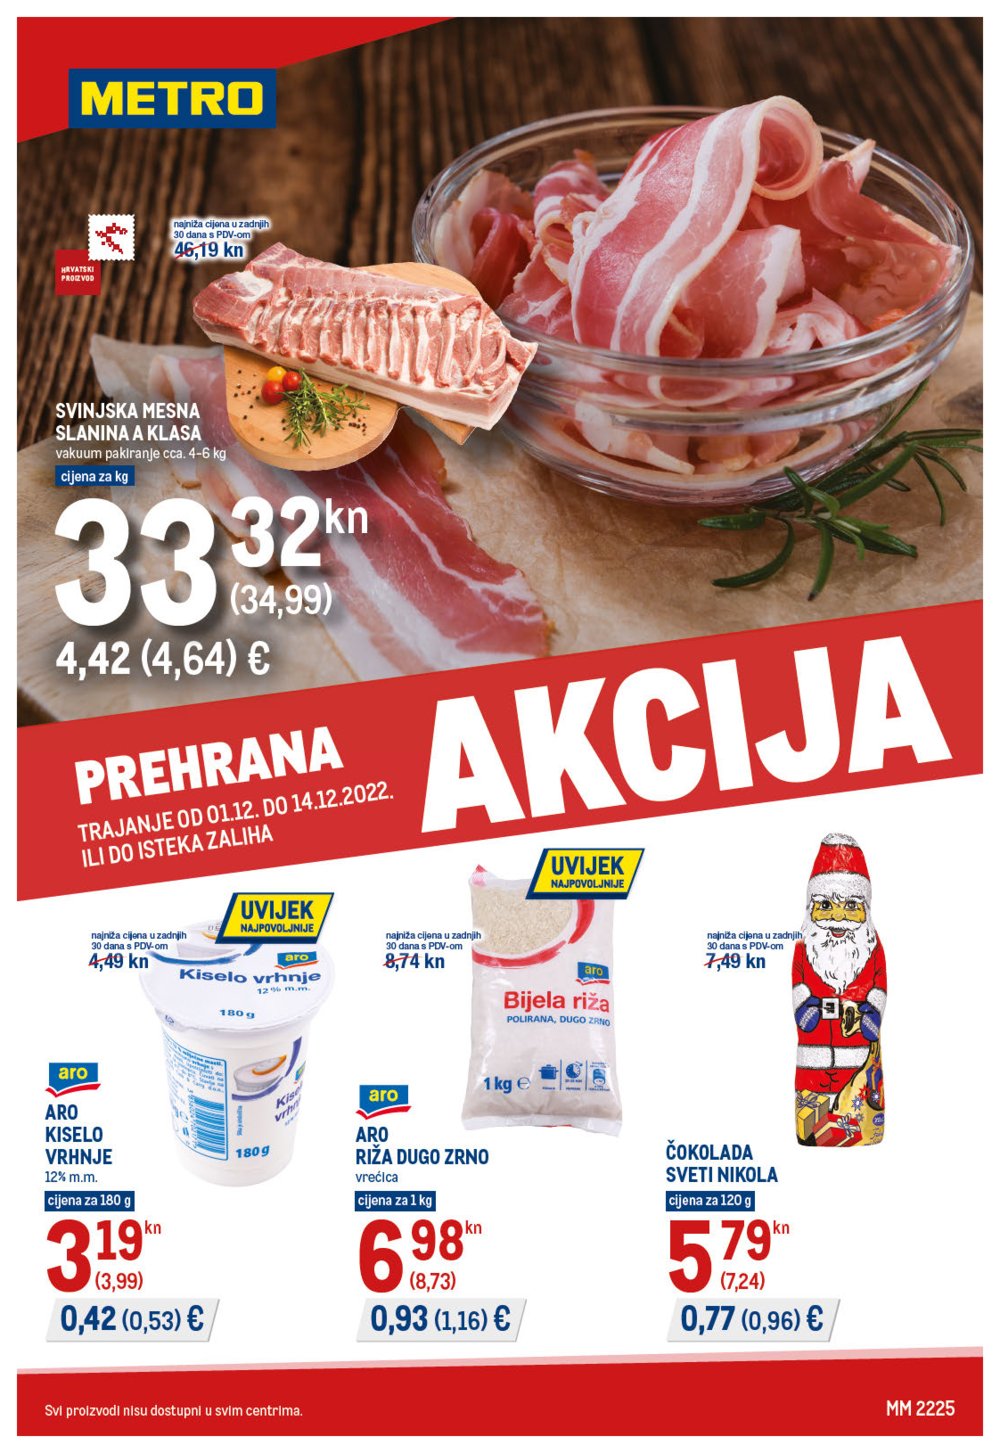 Metro katalog Prehrana 01.12.-14.12.2022.